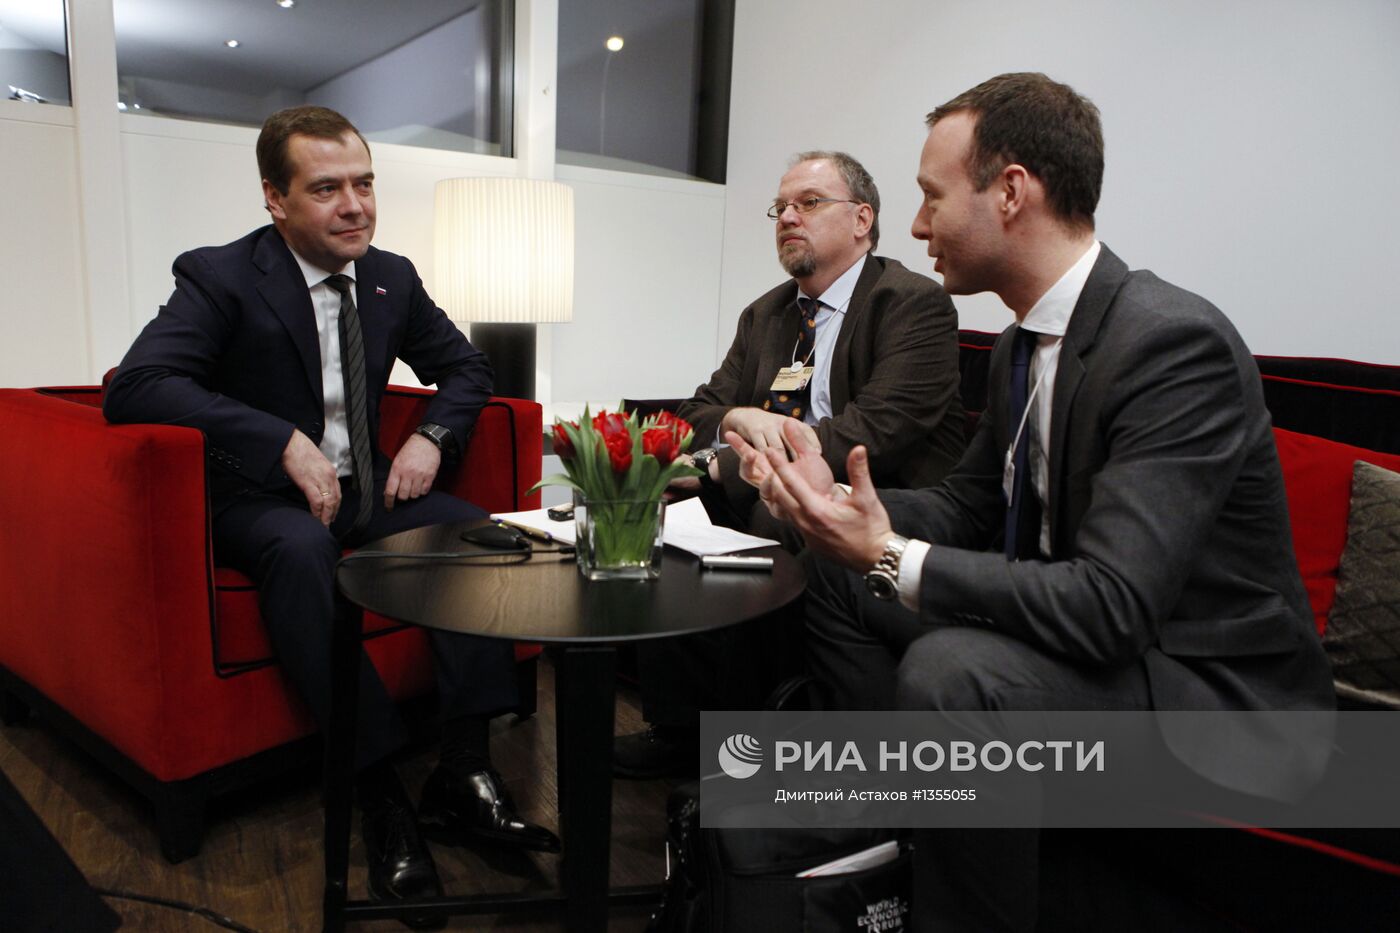 Интервью Д. Медведева деловой газете Handelsblatt